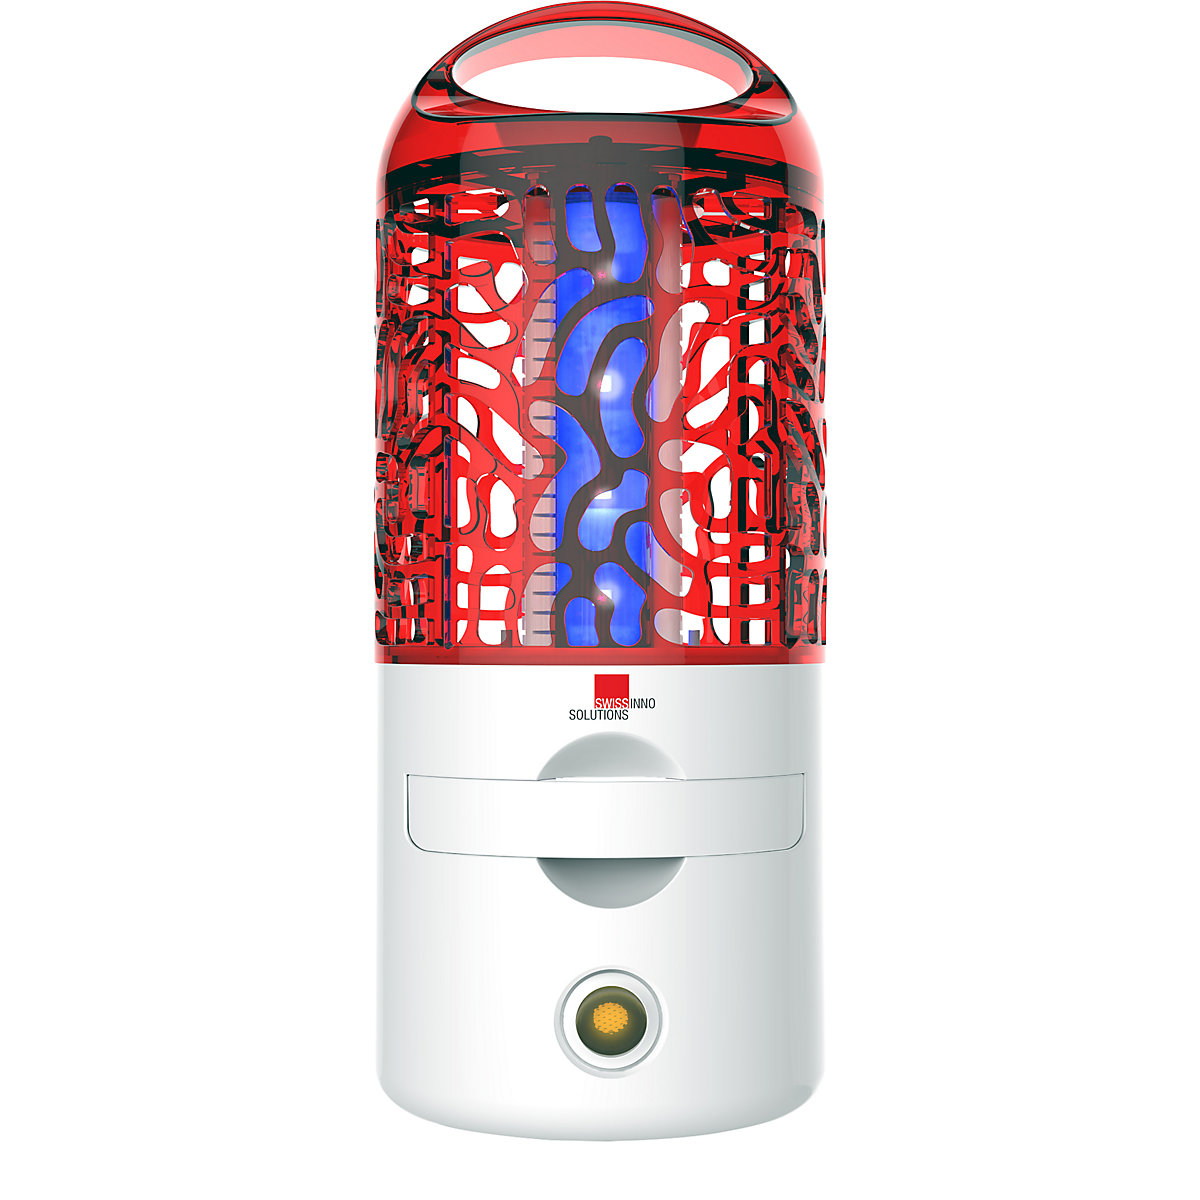 UV-Insektenvernichter 4 W, aufladbar, LED, akkubetrieben, ØxH 113 x 275 mm, weiß/rot